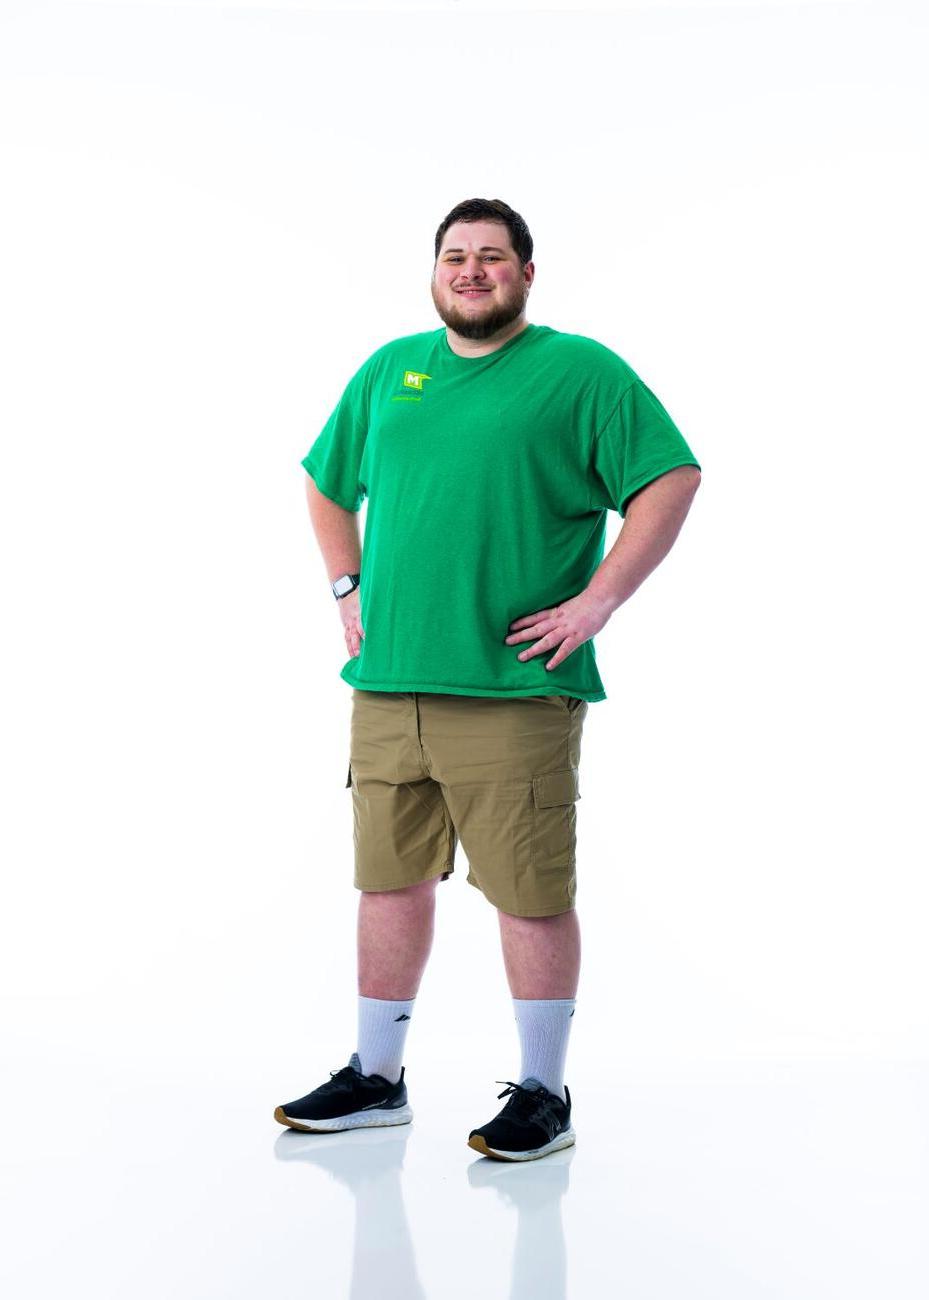 一名身穿绿色衬衫的学生双手叉腰站在白色背景前.